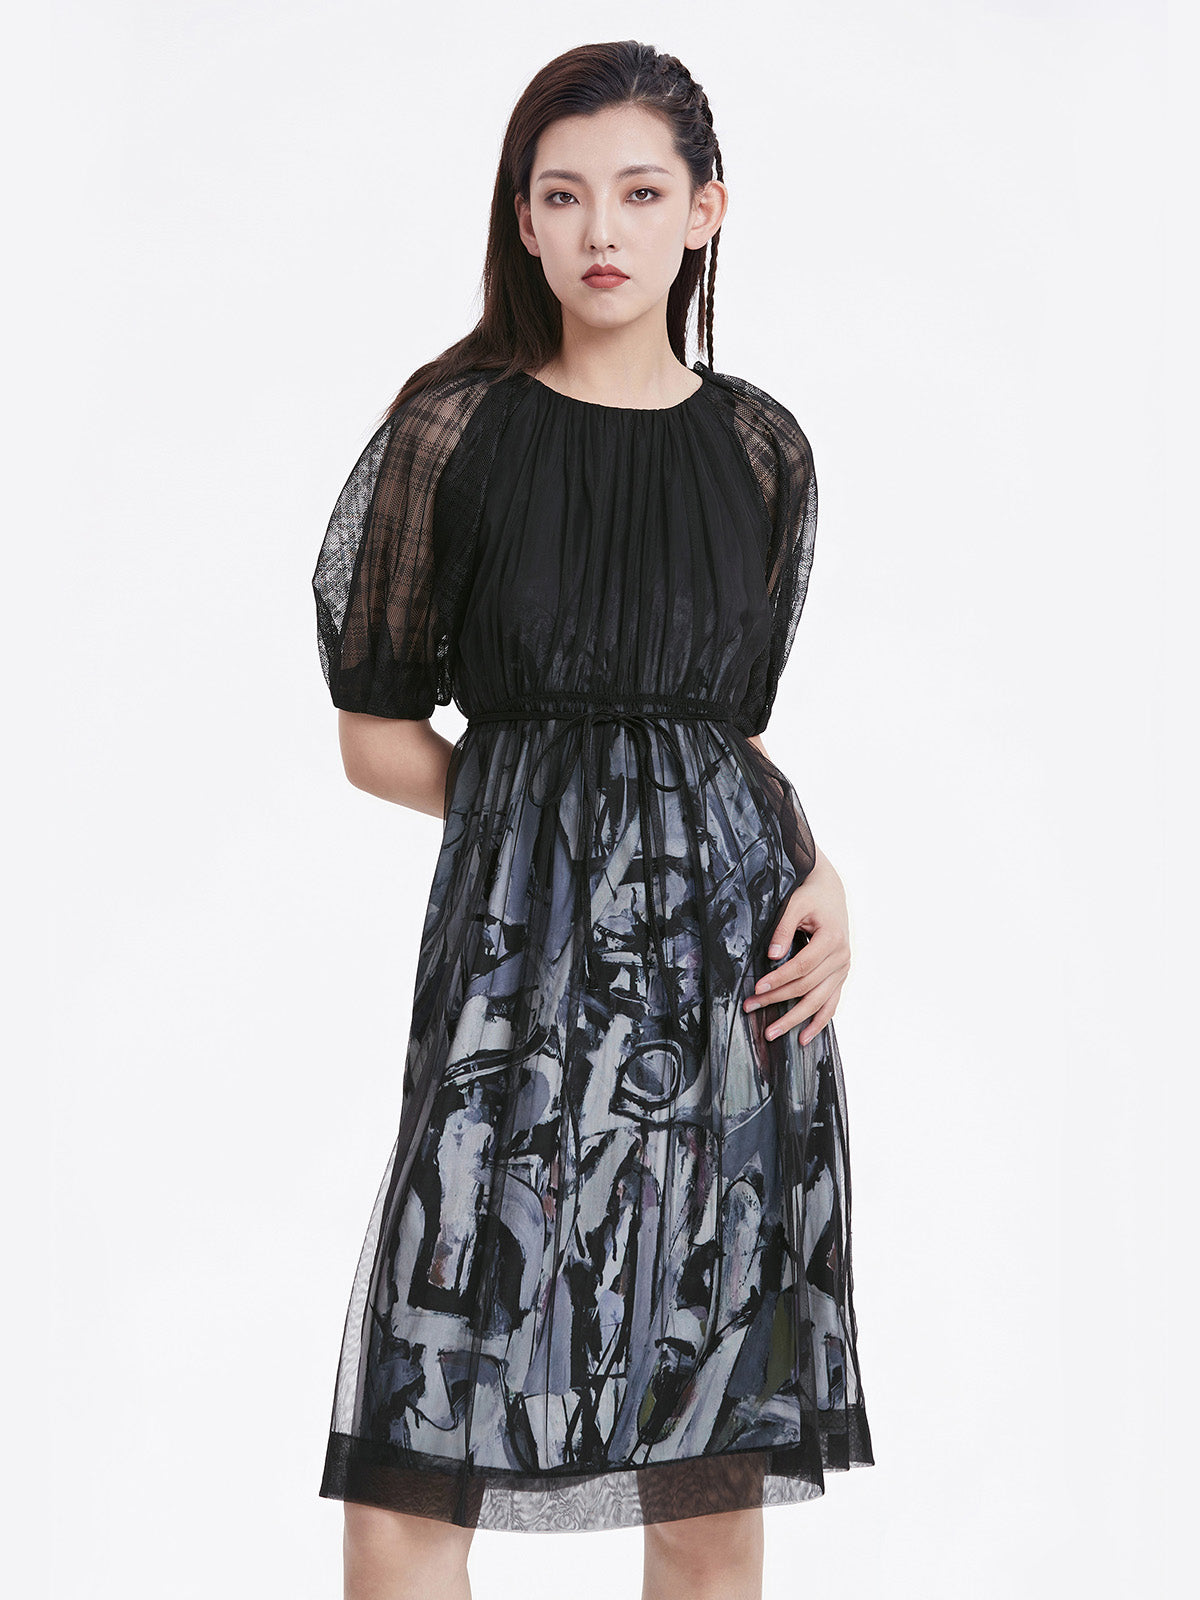 Bedrucktes Kleid mit transparenten Netzärmeln und Gittermuster